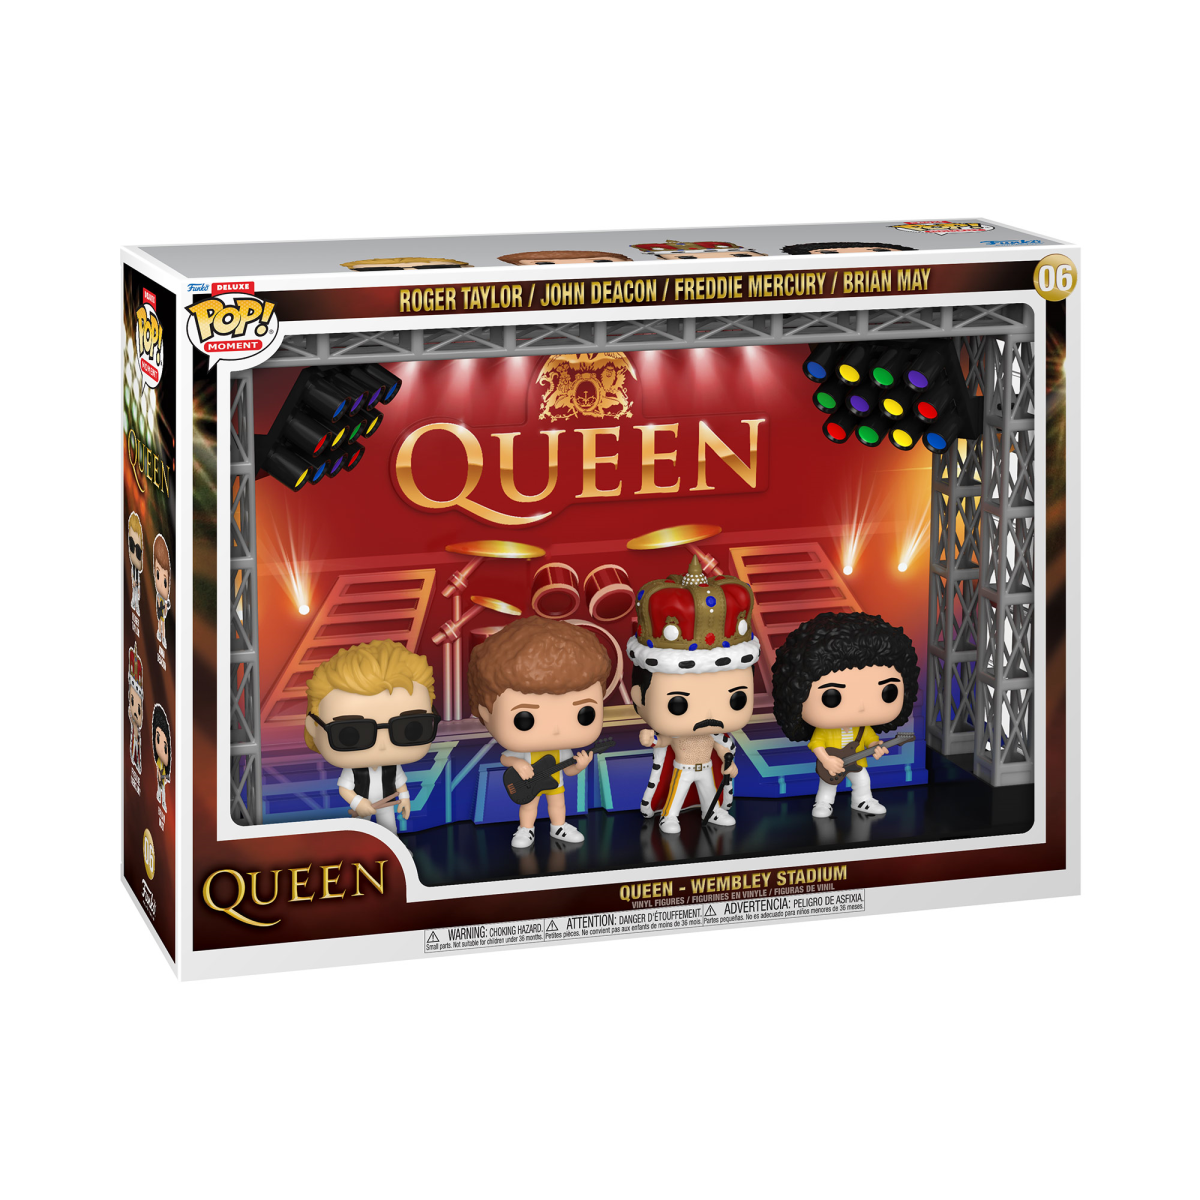 Queen - Wembley Stadium (Pop! Moments Deluxe) Vinyl Figur 06 - Funko Pop! Figur - multicolor